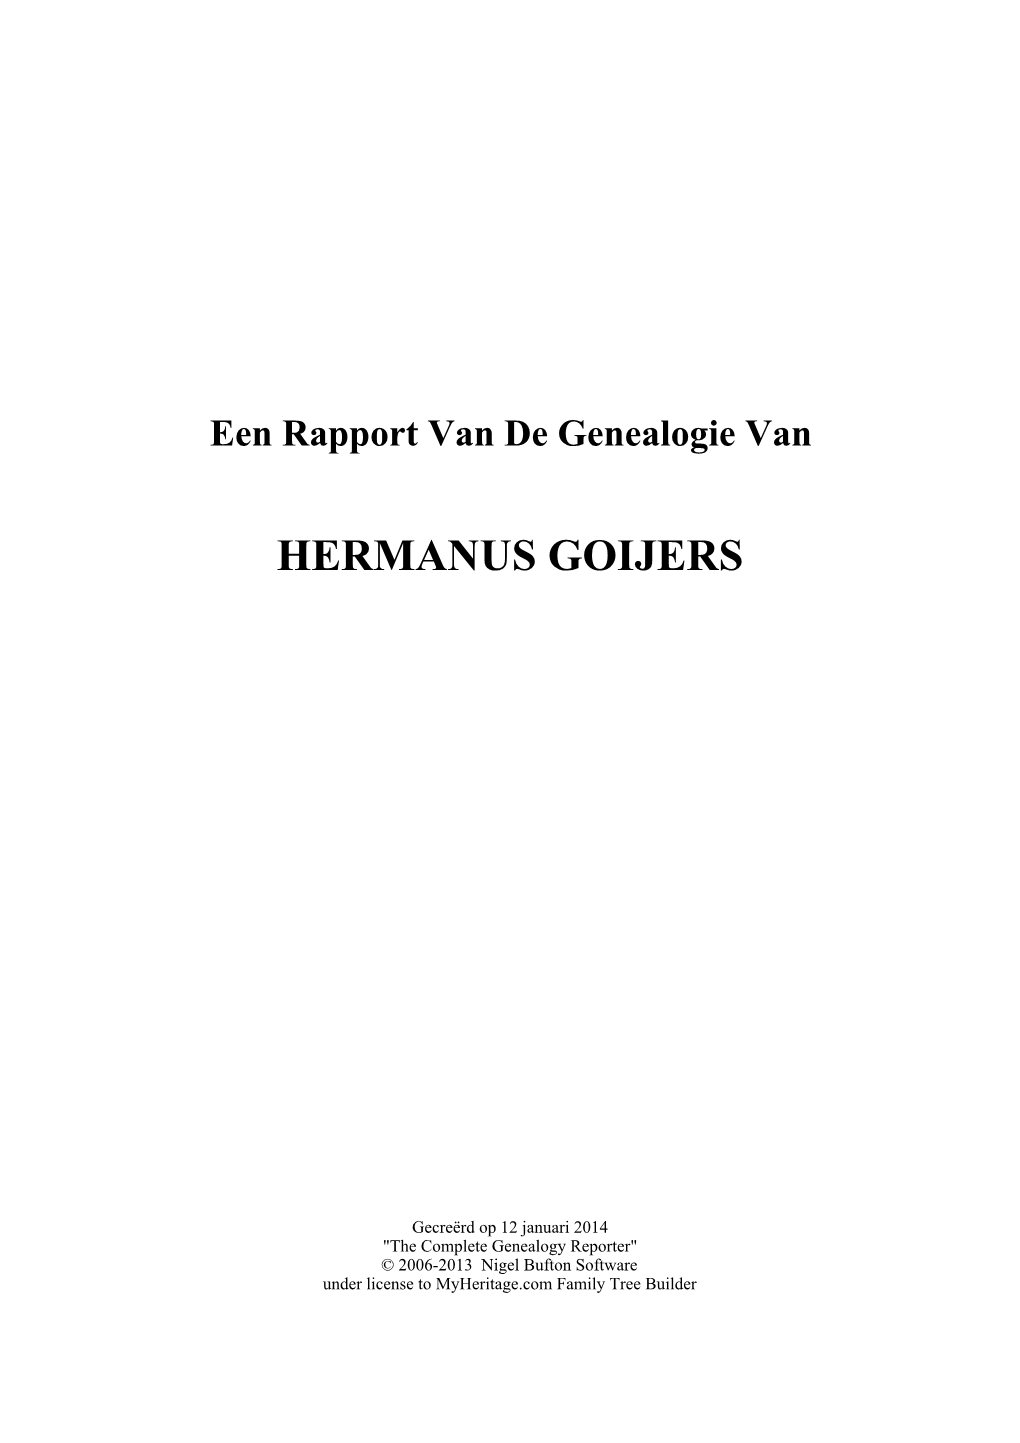 Hermanus Goijers